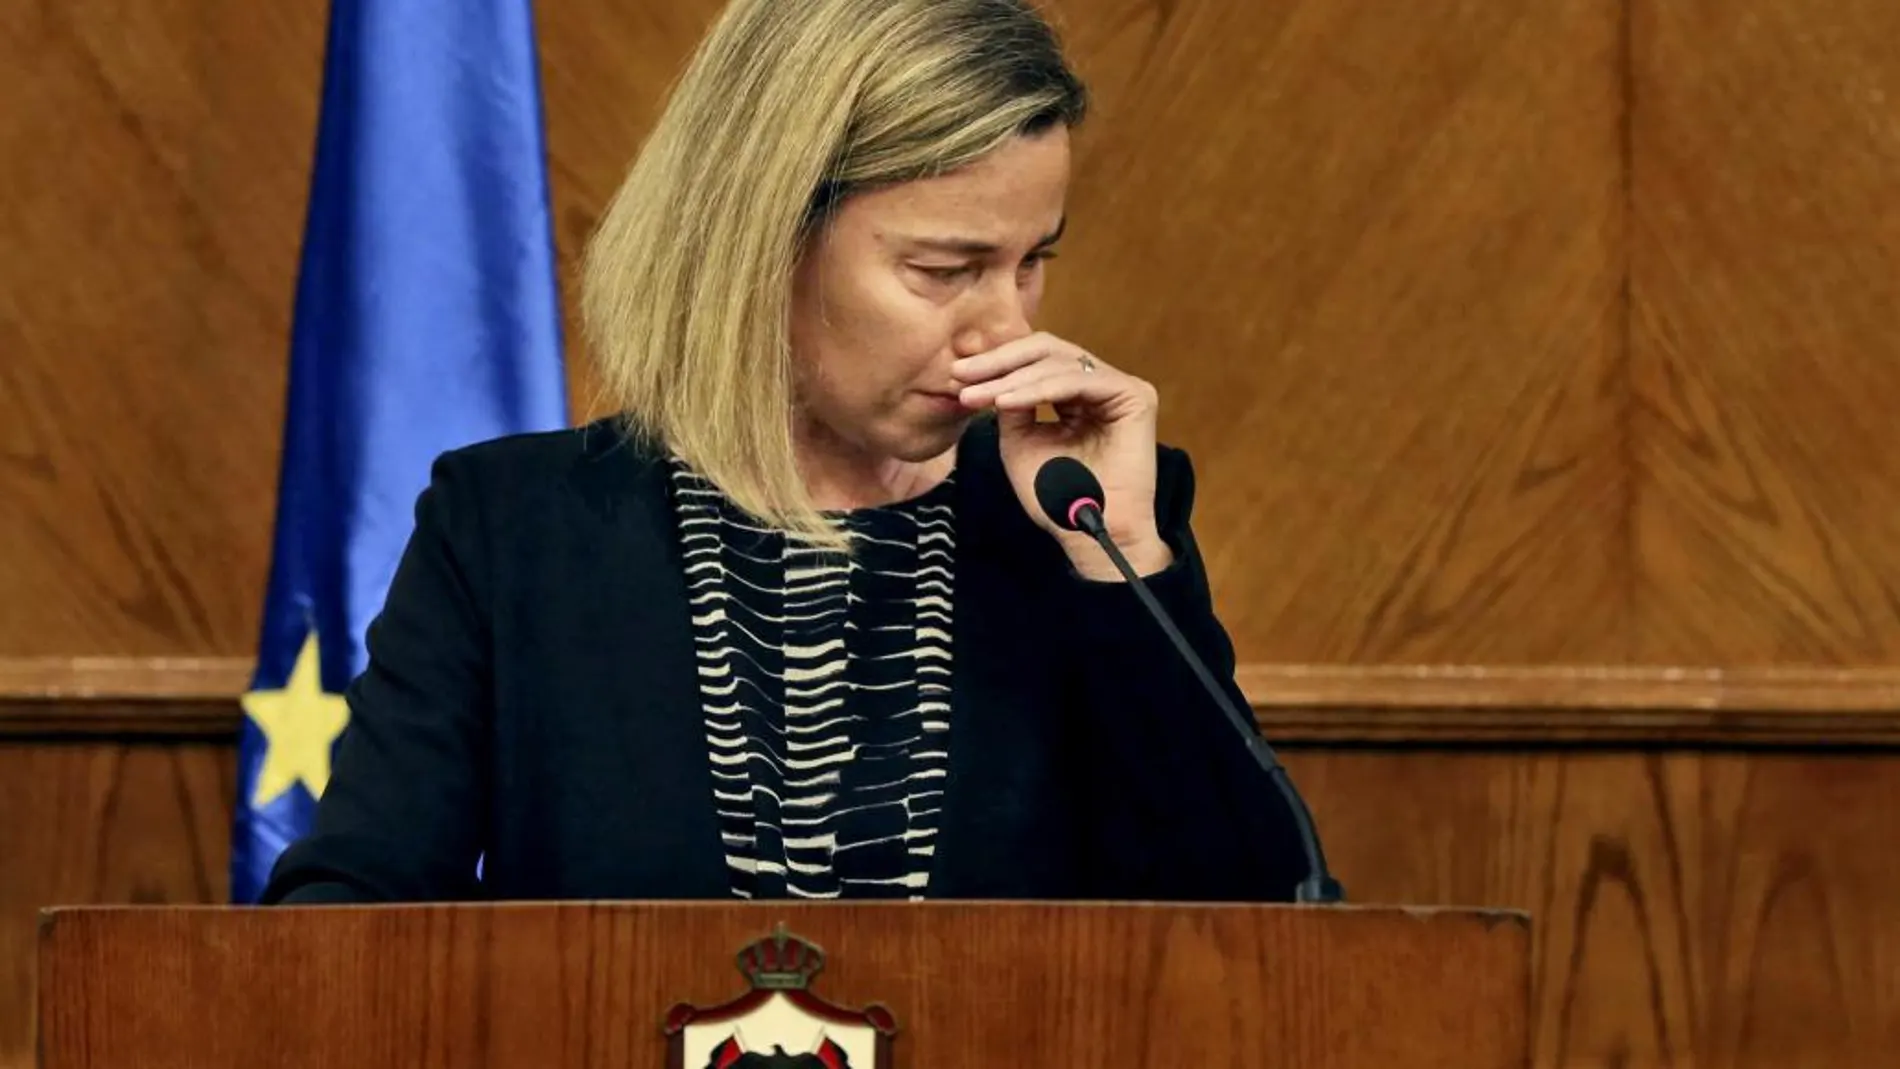 La alta representante de la Unión Europea, Federica Mogherini, no pudo contener las lágrimas al hablar de los atentados